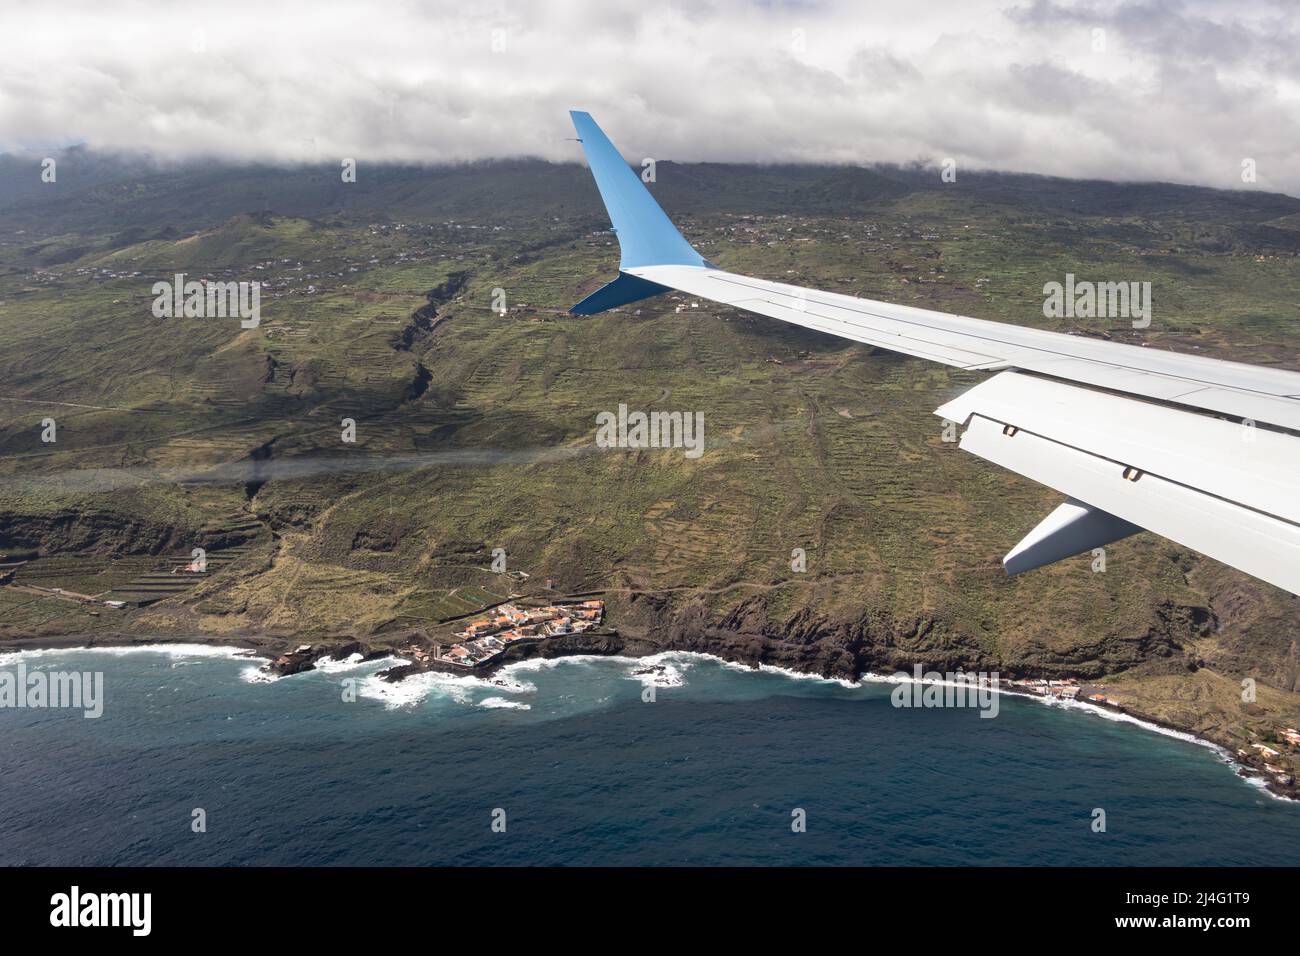 Ala de un avión que vuela sobre el Océano Atlántico acercándose a la Isla Canaria La Palma Foto de stock